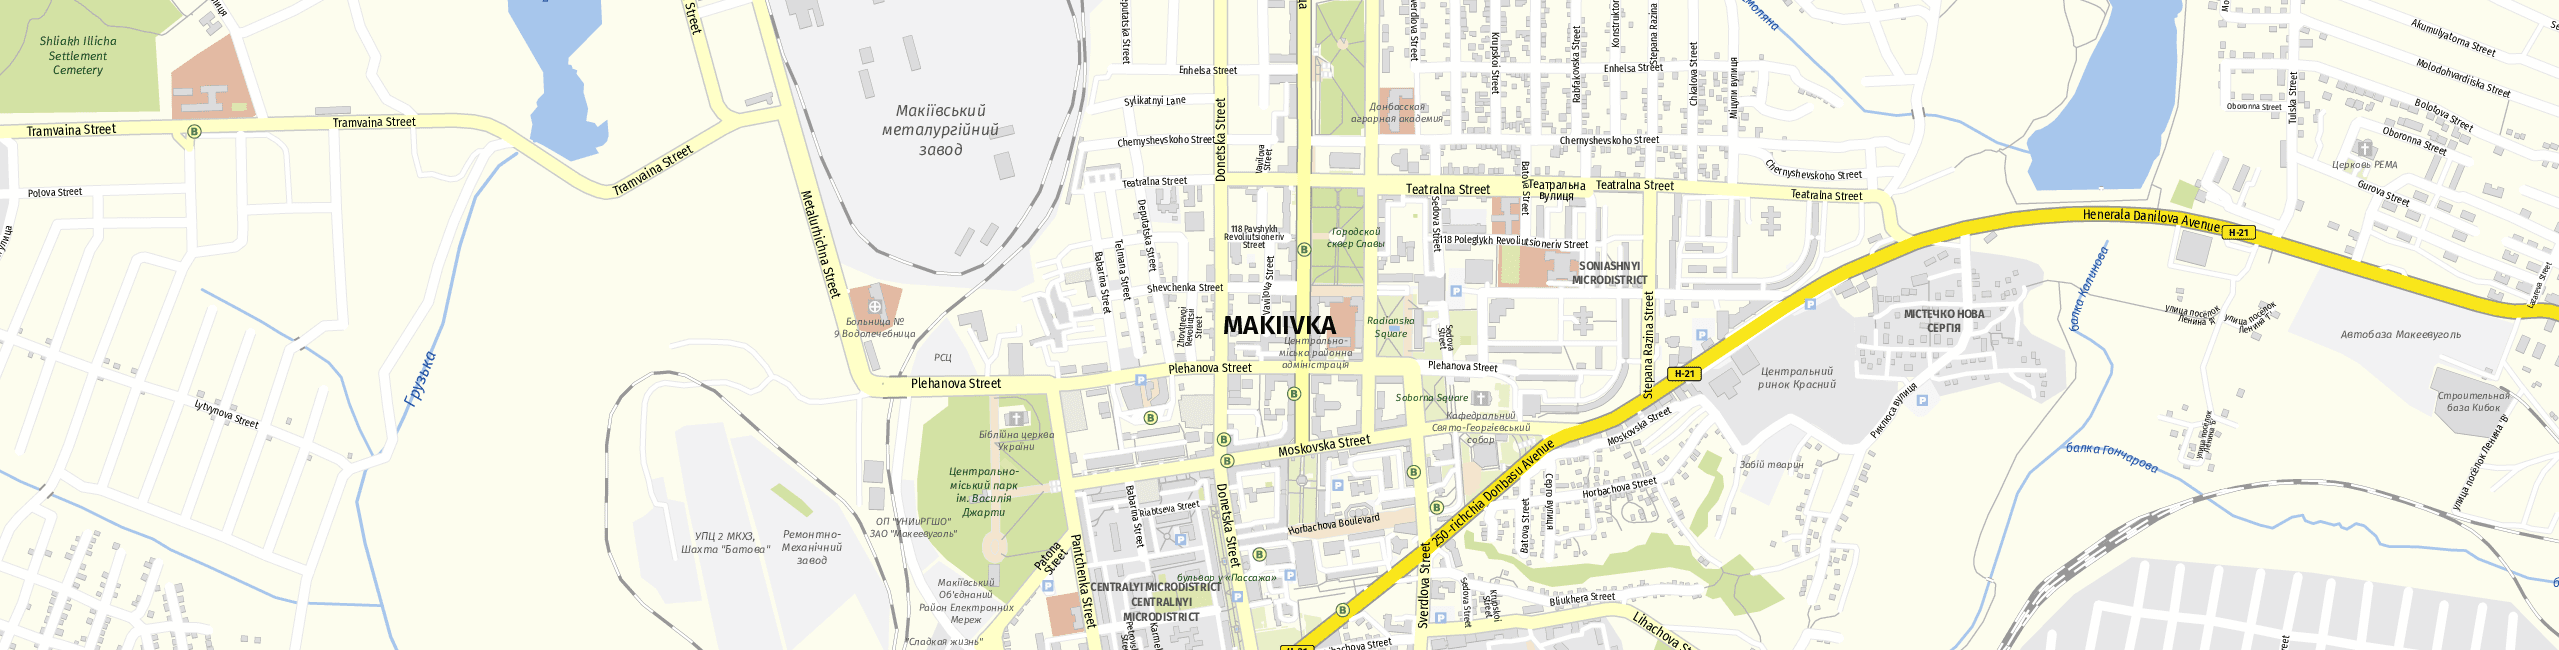 Stadtplan Makijiwka zum Downloaden.